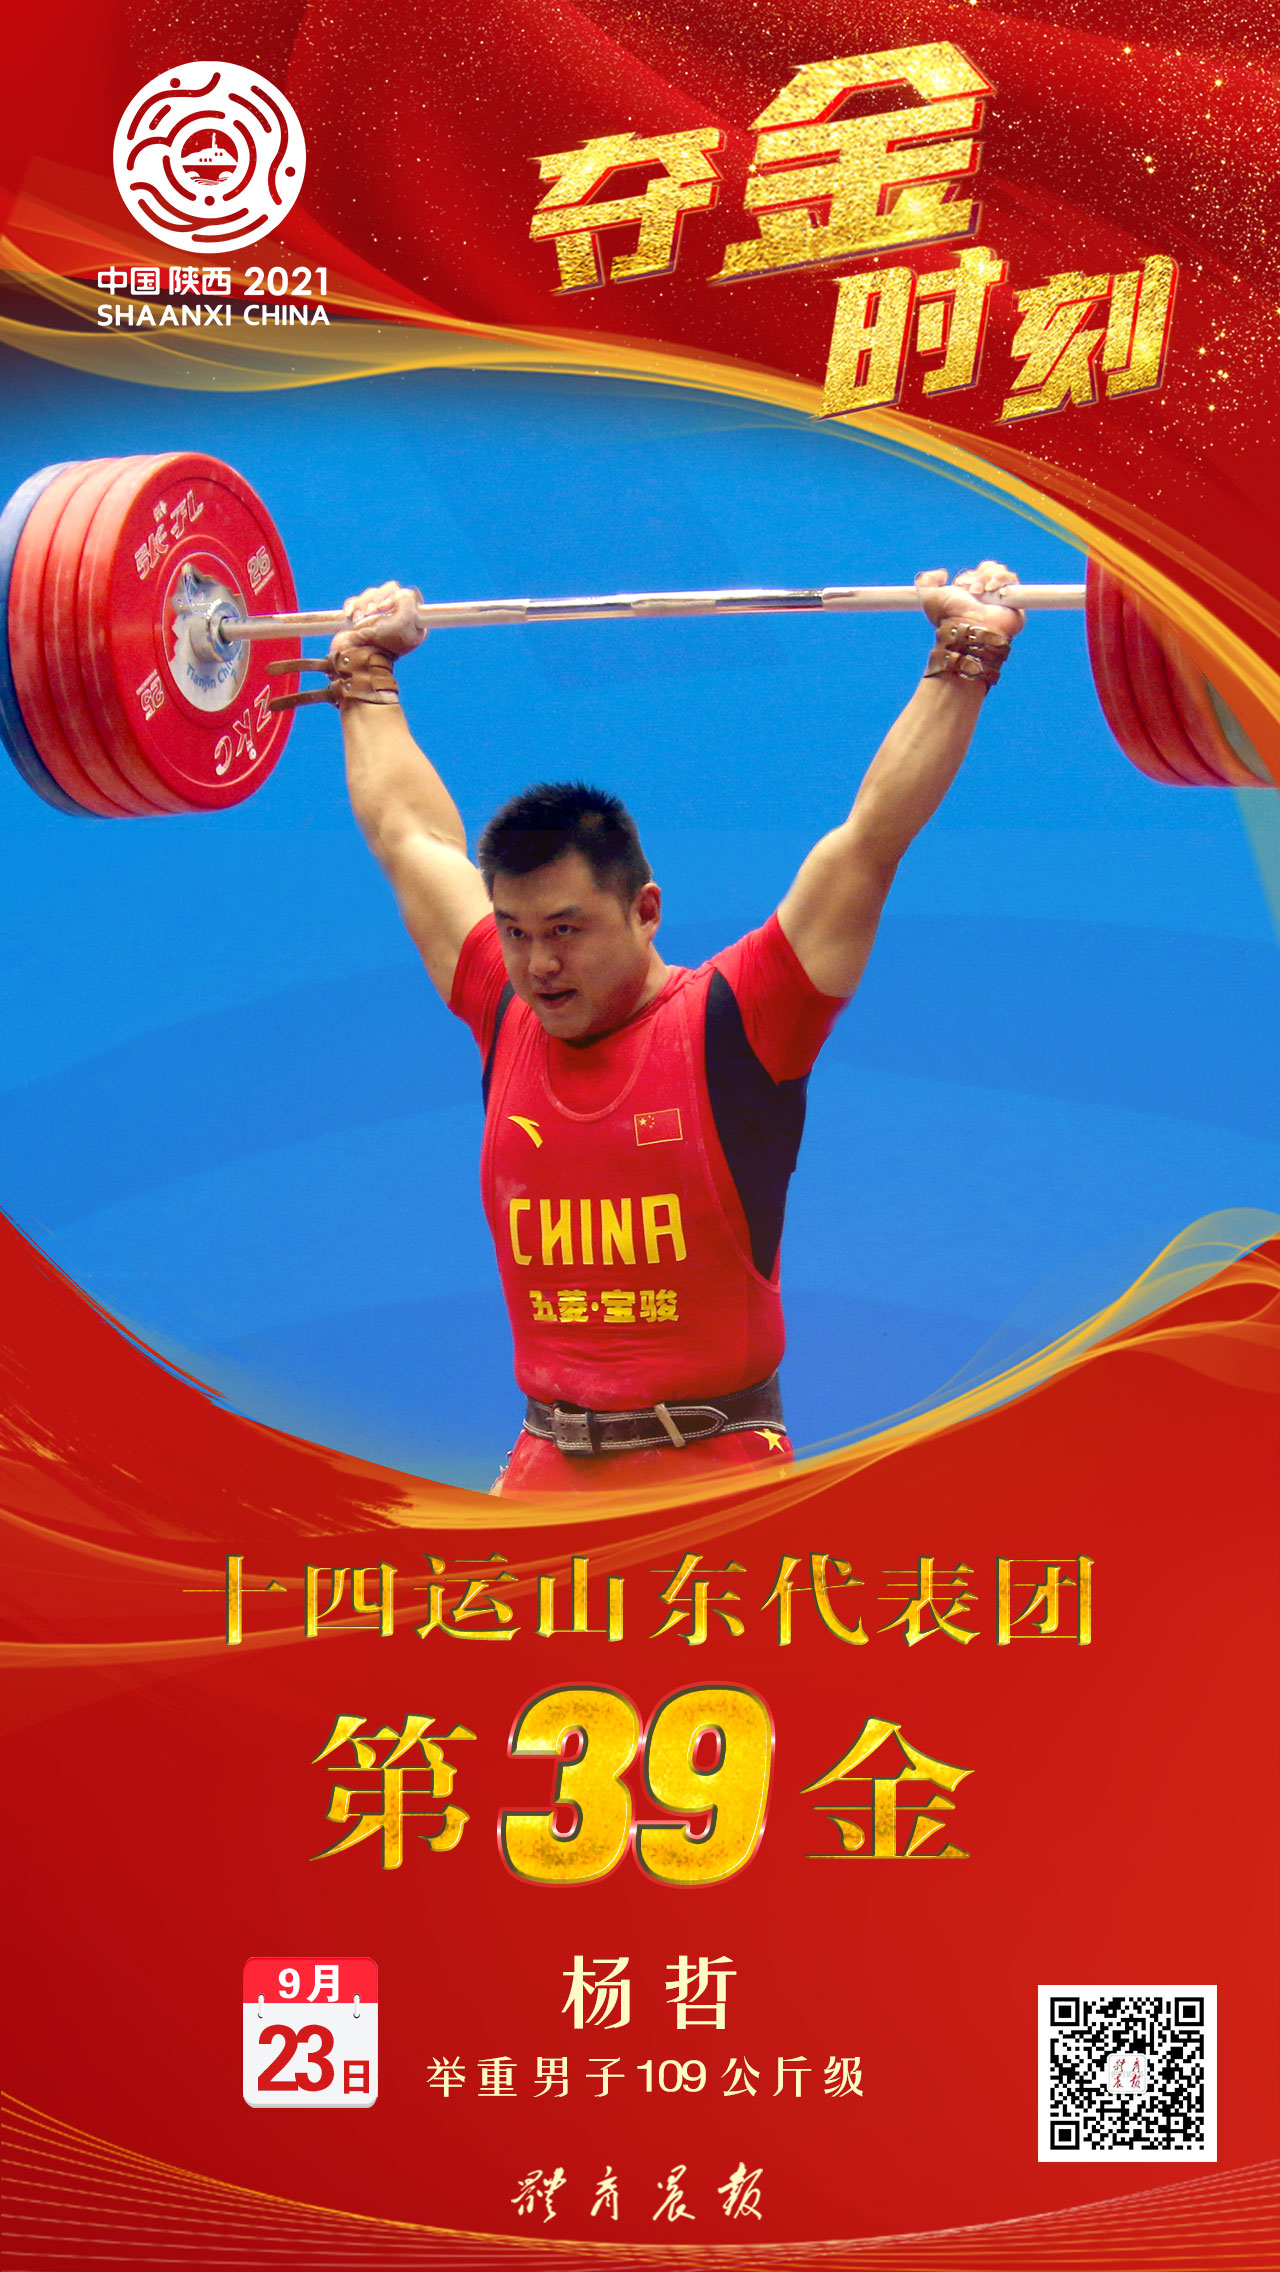 济南名将杨哲以总成绩411公斤夺得冠军,这是而立之年的杨哲在全运会